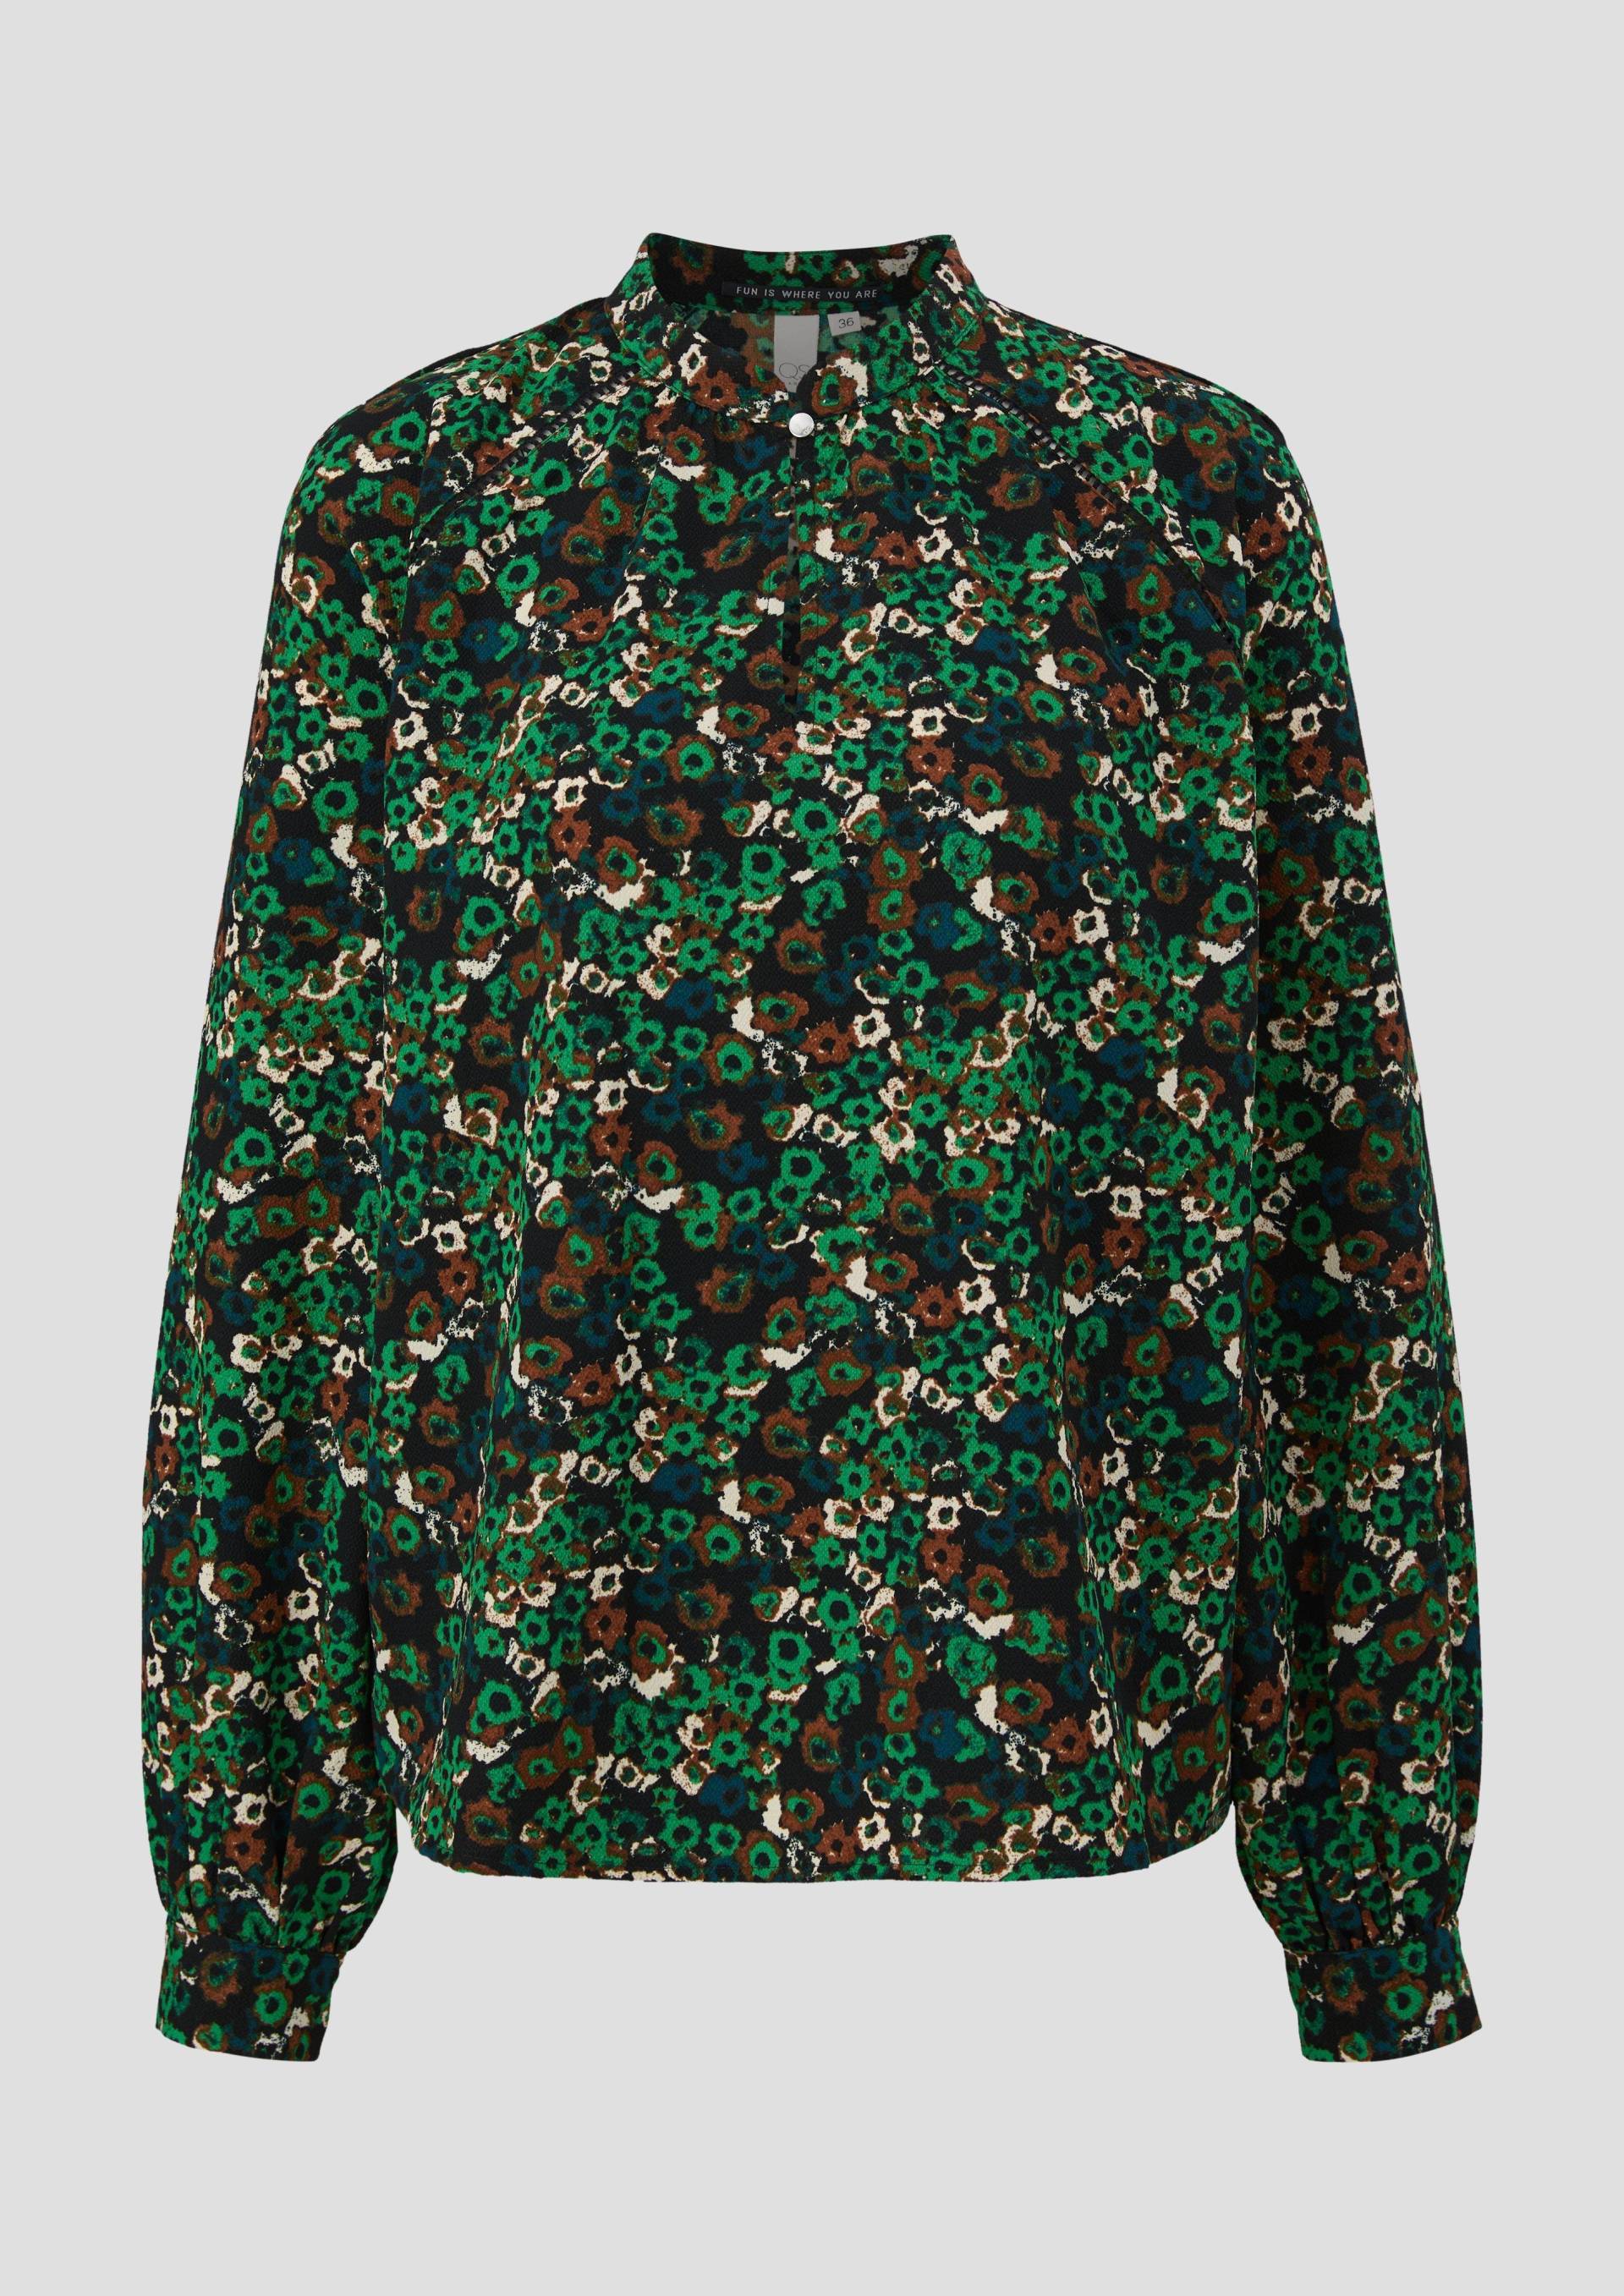 QS - Bluse mit All-over-Print, Damen, grün von QS